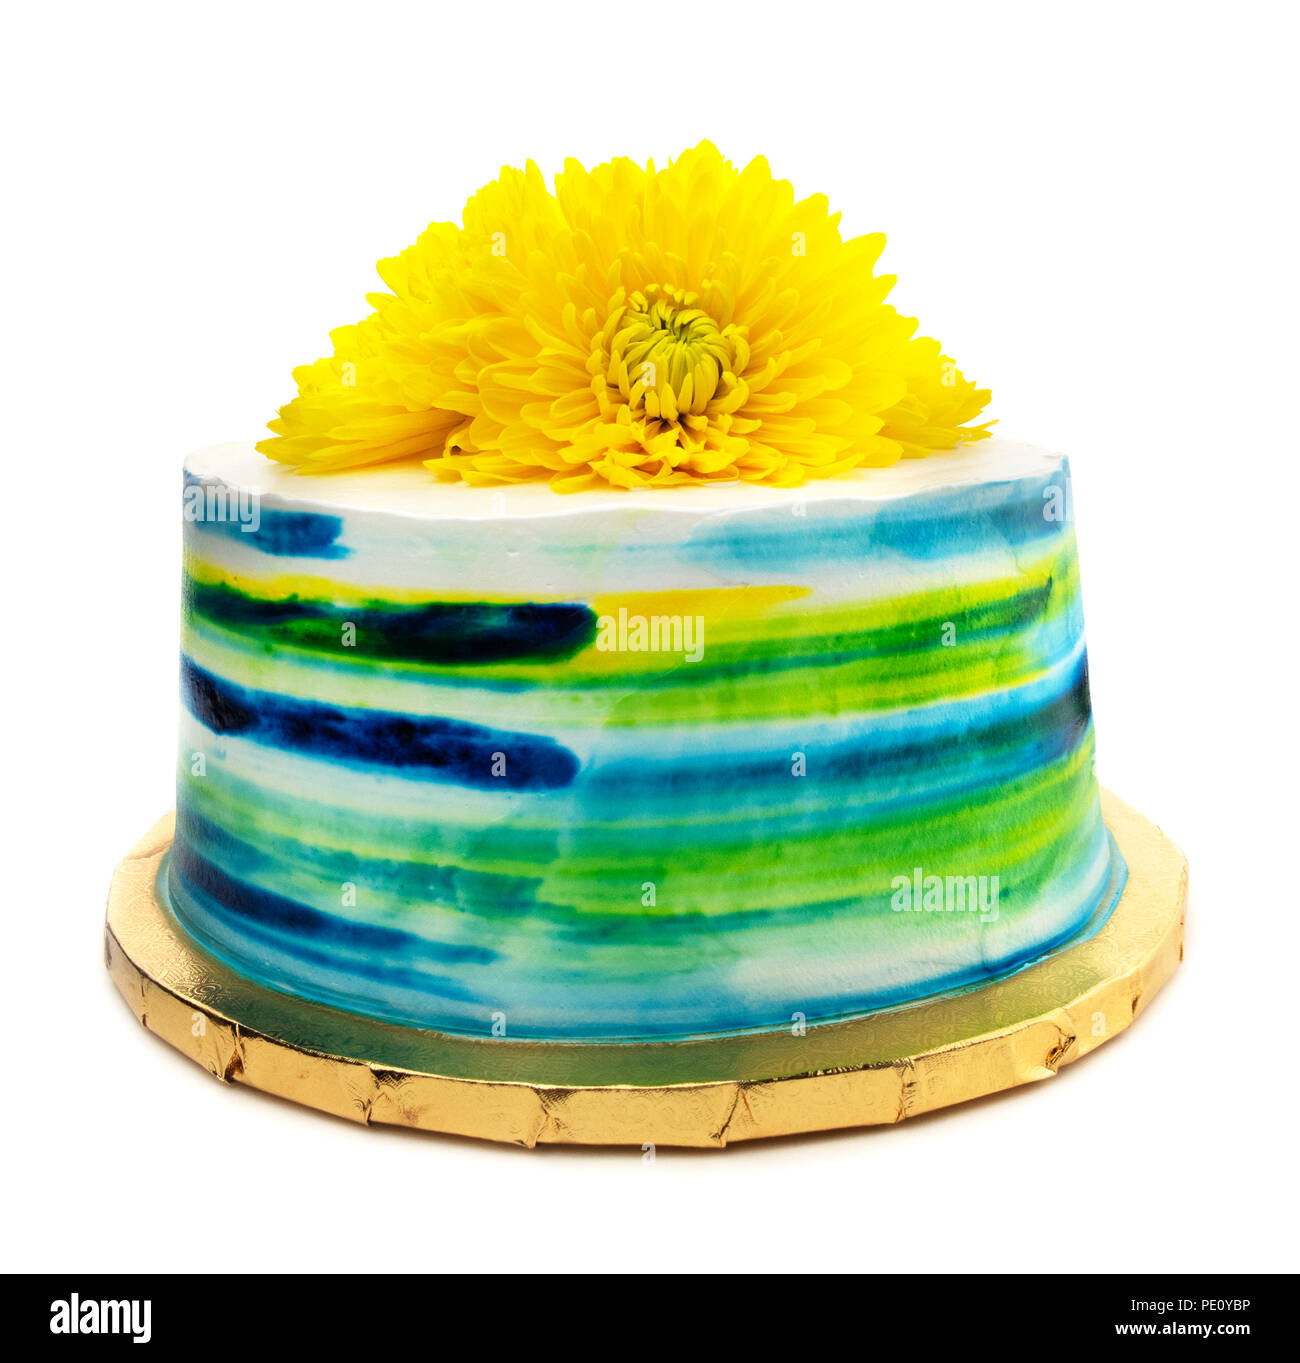 De couleur jaune et bleu sarcelle crème beurre gâteau givré avec des fleurs jaunes. Banque D'Images